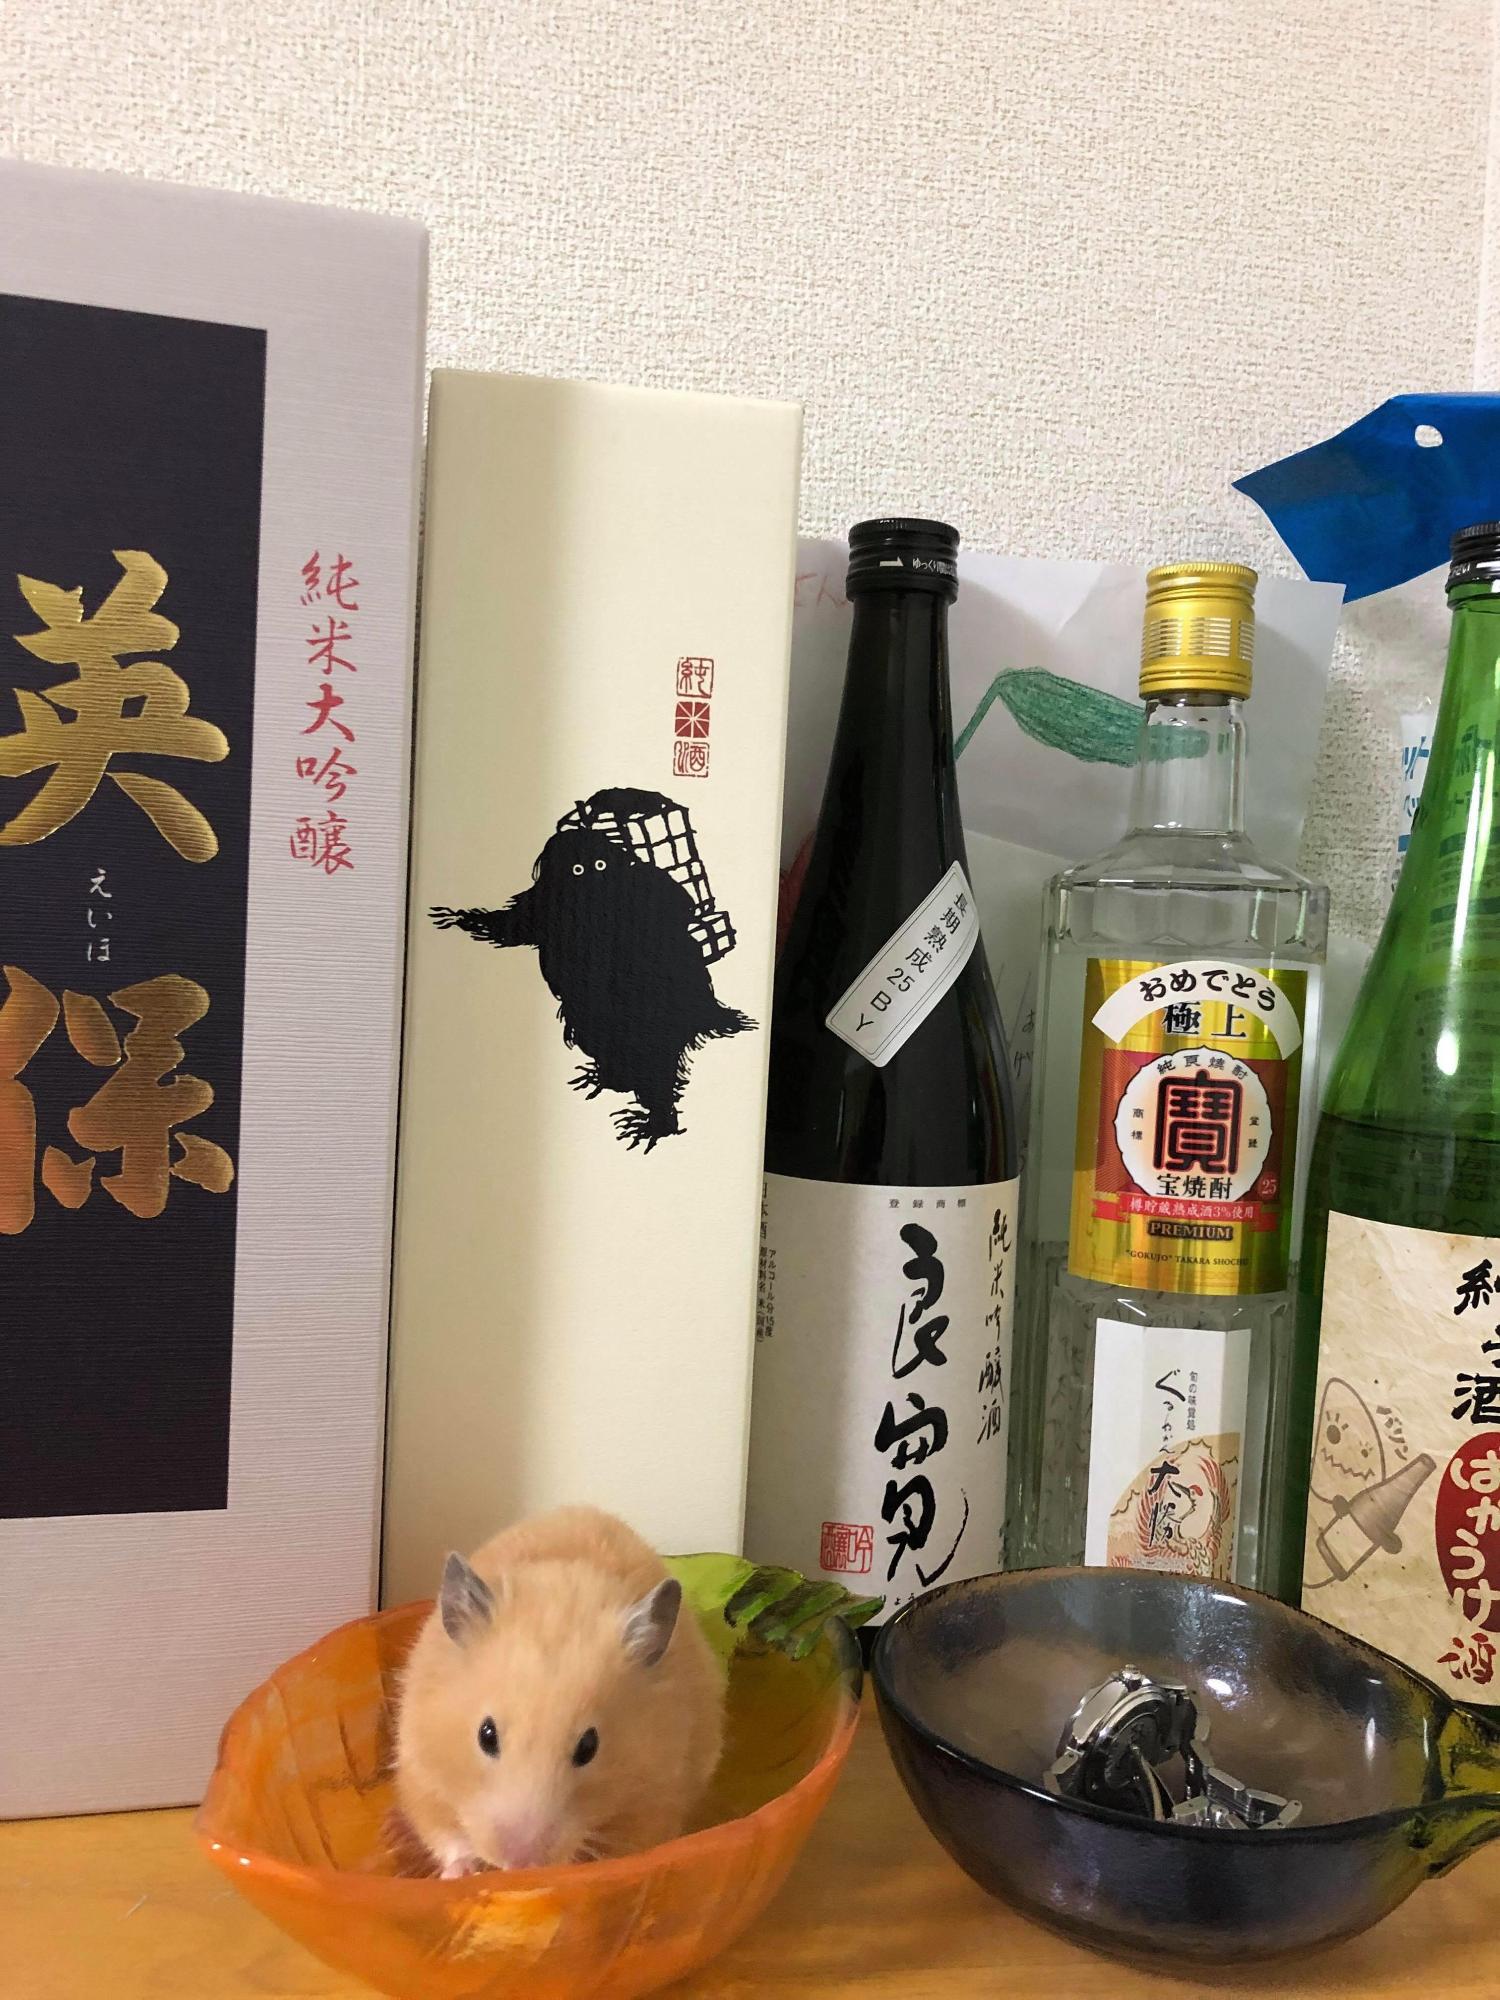 白い壁を背景に、日本酒や焼酎などお酒の箱や瓶が合わせて5つ並んでおり、その前にハムスターの入ったオレンジ色のお椀と腕時計が入った黒いお椀が並んで置かれている写真